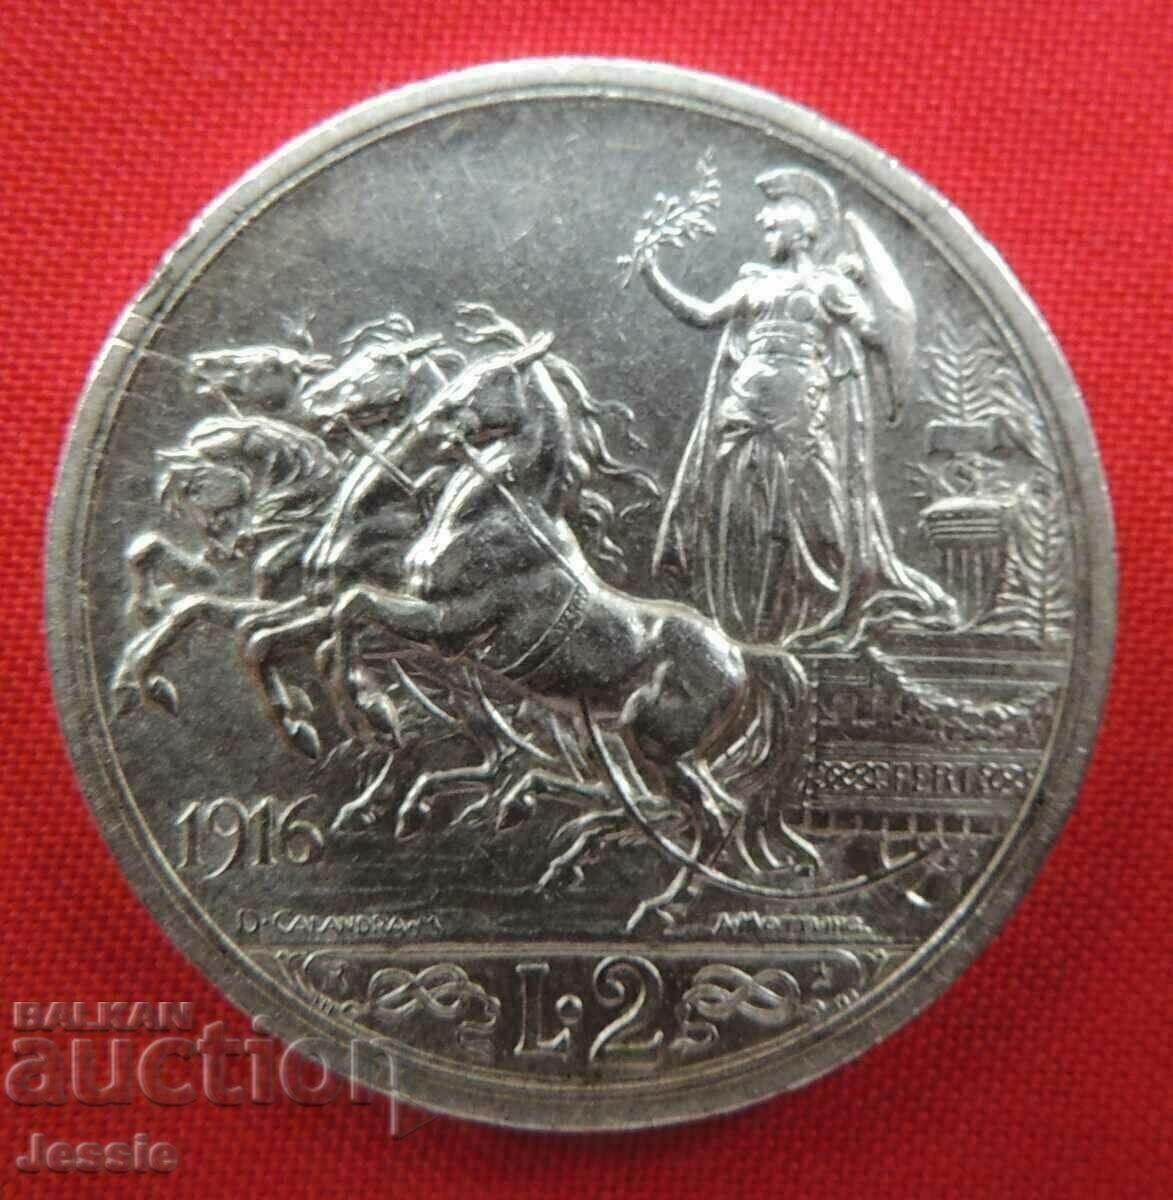 2 λίρες 1916 R Ιταλίας ασήμι Ποιότητα Συγκρίνετε και Βαθμολογήστε!